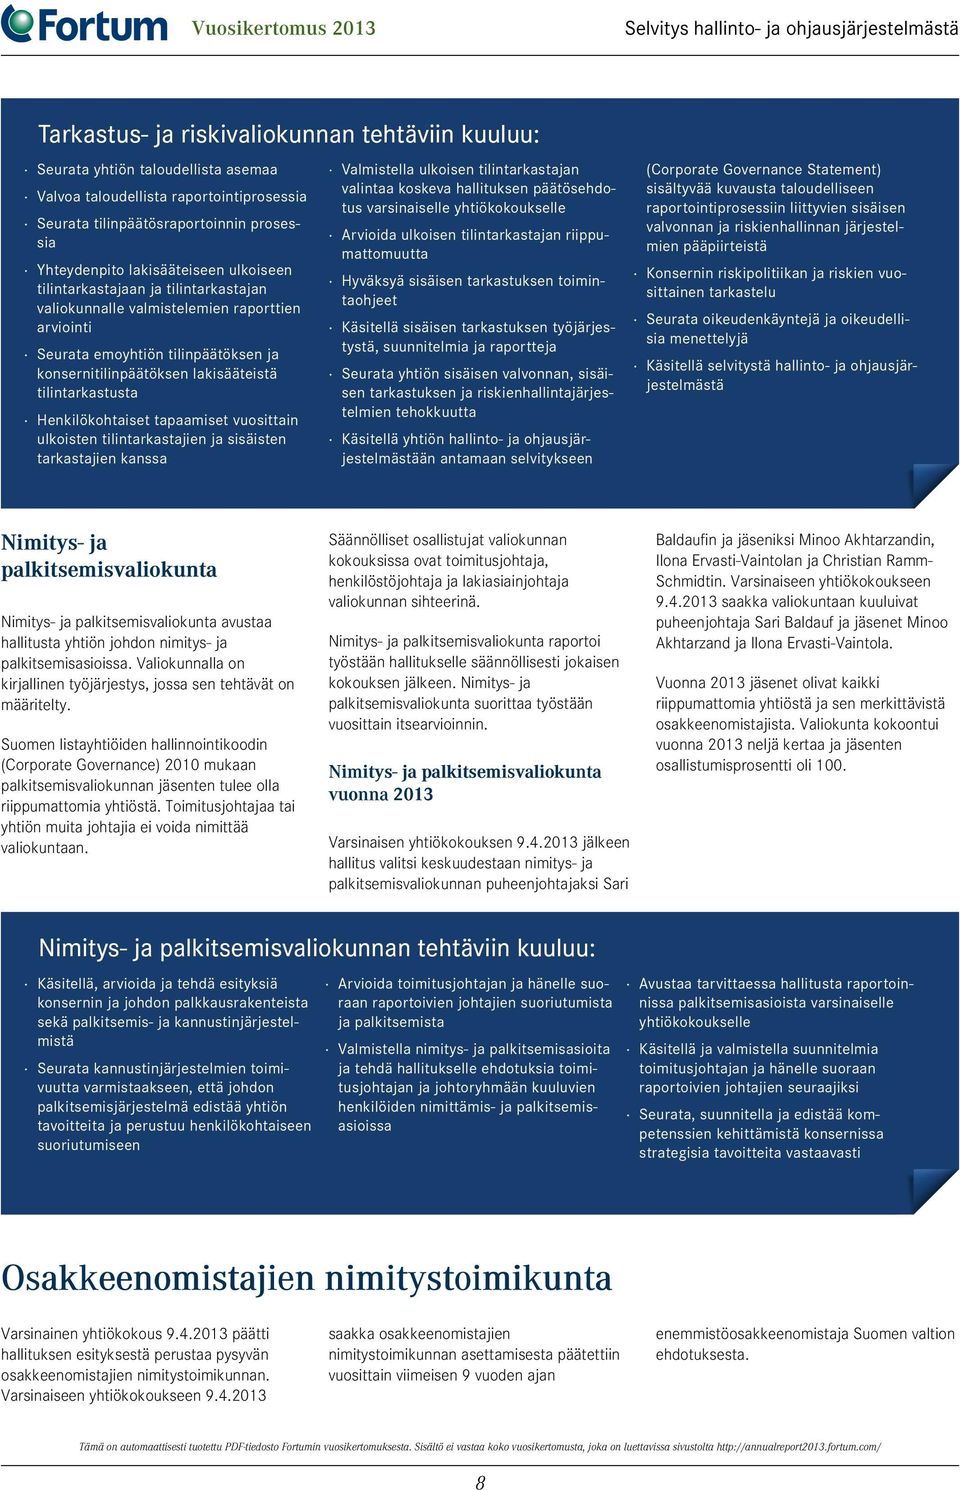 Suomen listayhtiöiden hallinnointikoodin (Corporate Governance) 2010 mukaan palkitsemisvaliokunnan jäsenten tulee olla riippumattomia yhtiöstä.